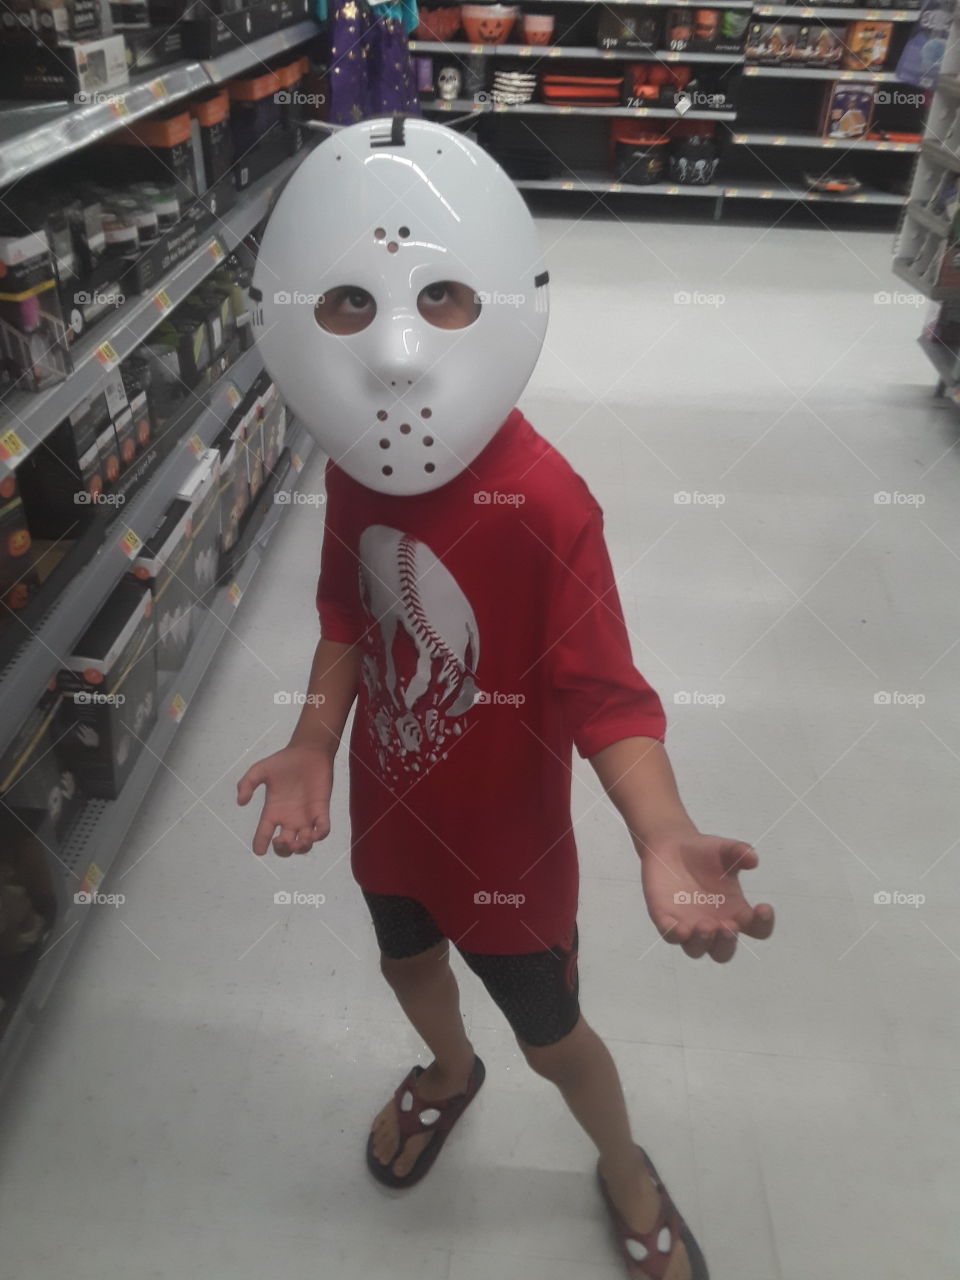 he loves the Jason mask